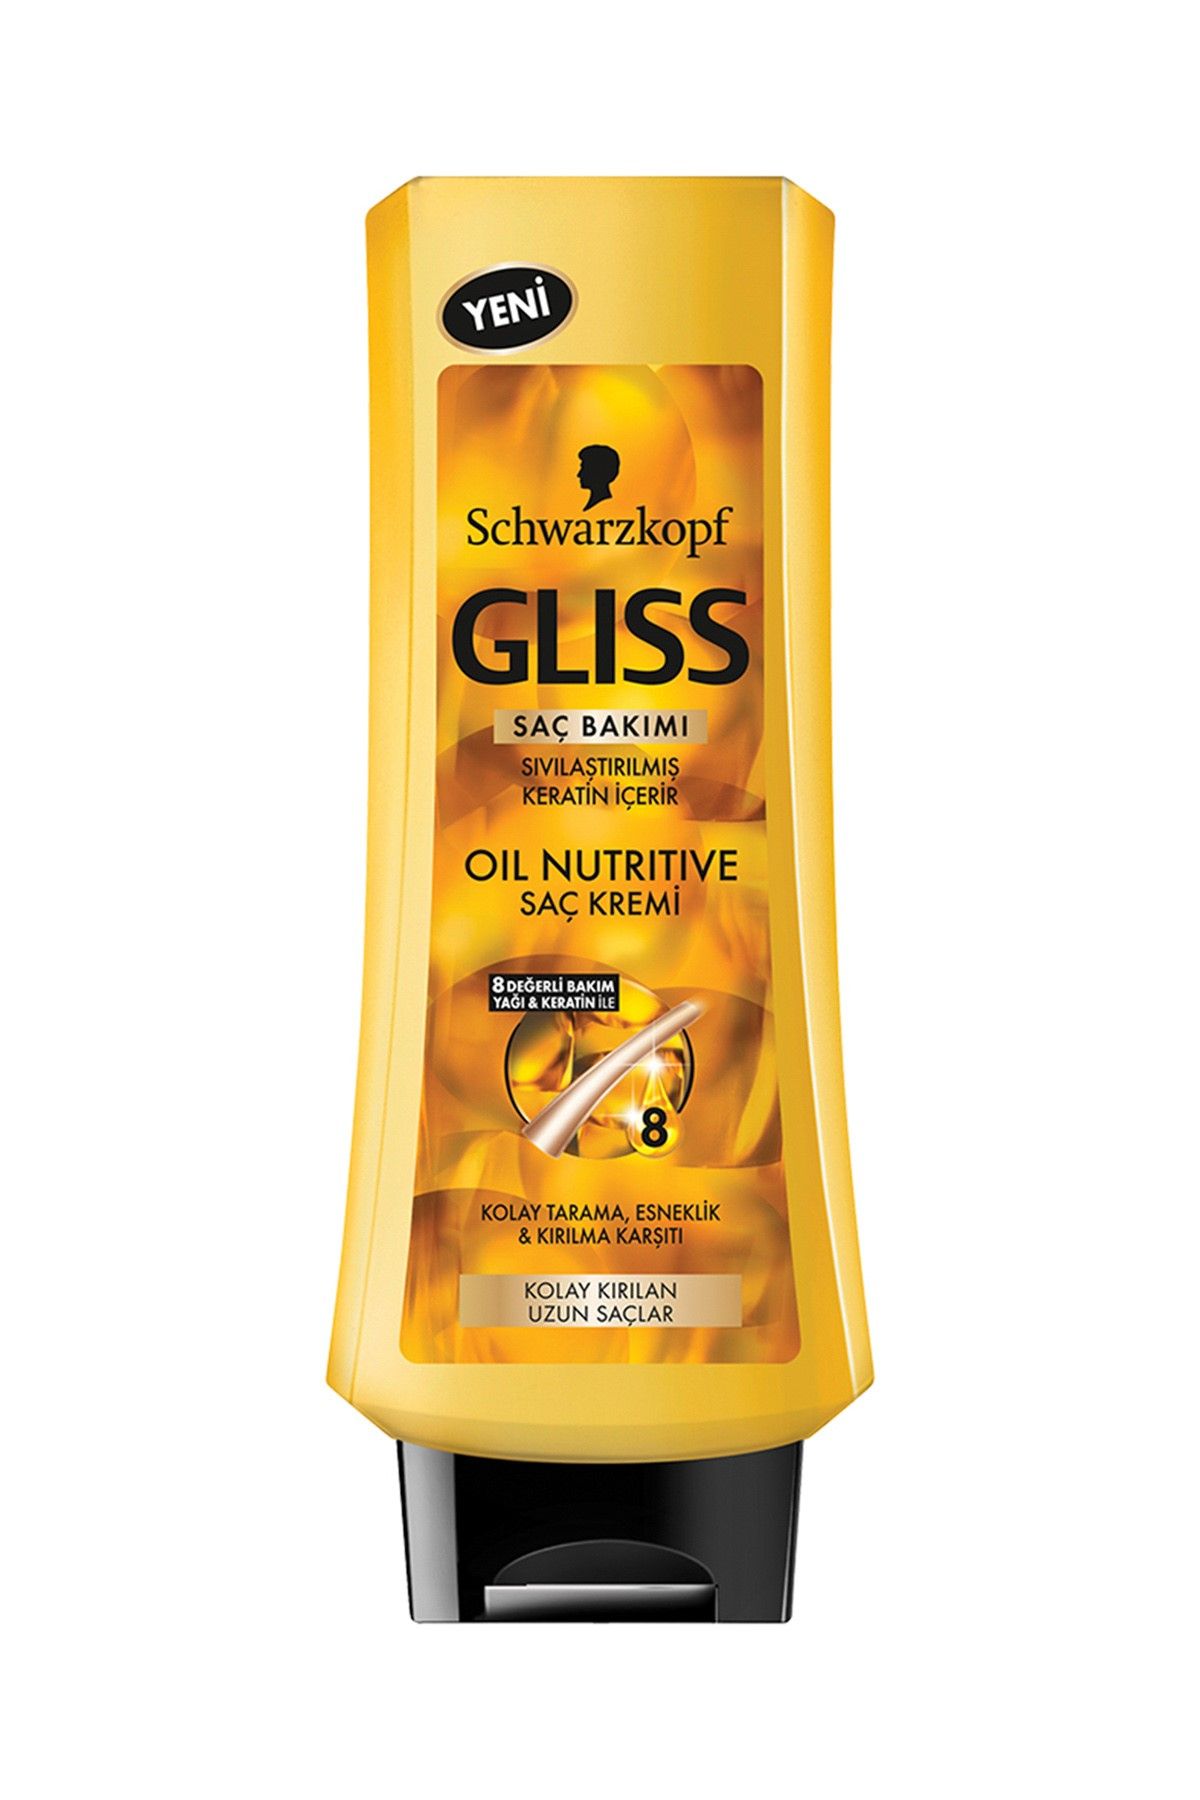 Gliss Oil Nutritive Kolay Kırılan Uzun Saçlar İçin Saç Kremi 400 ml